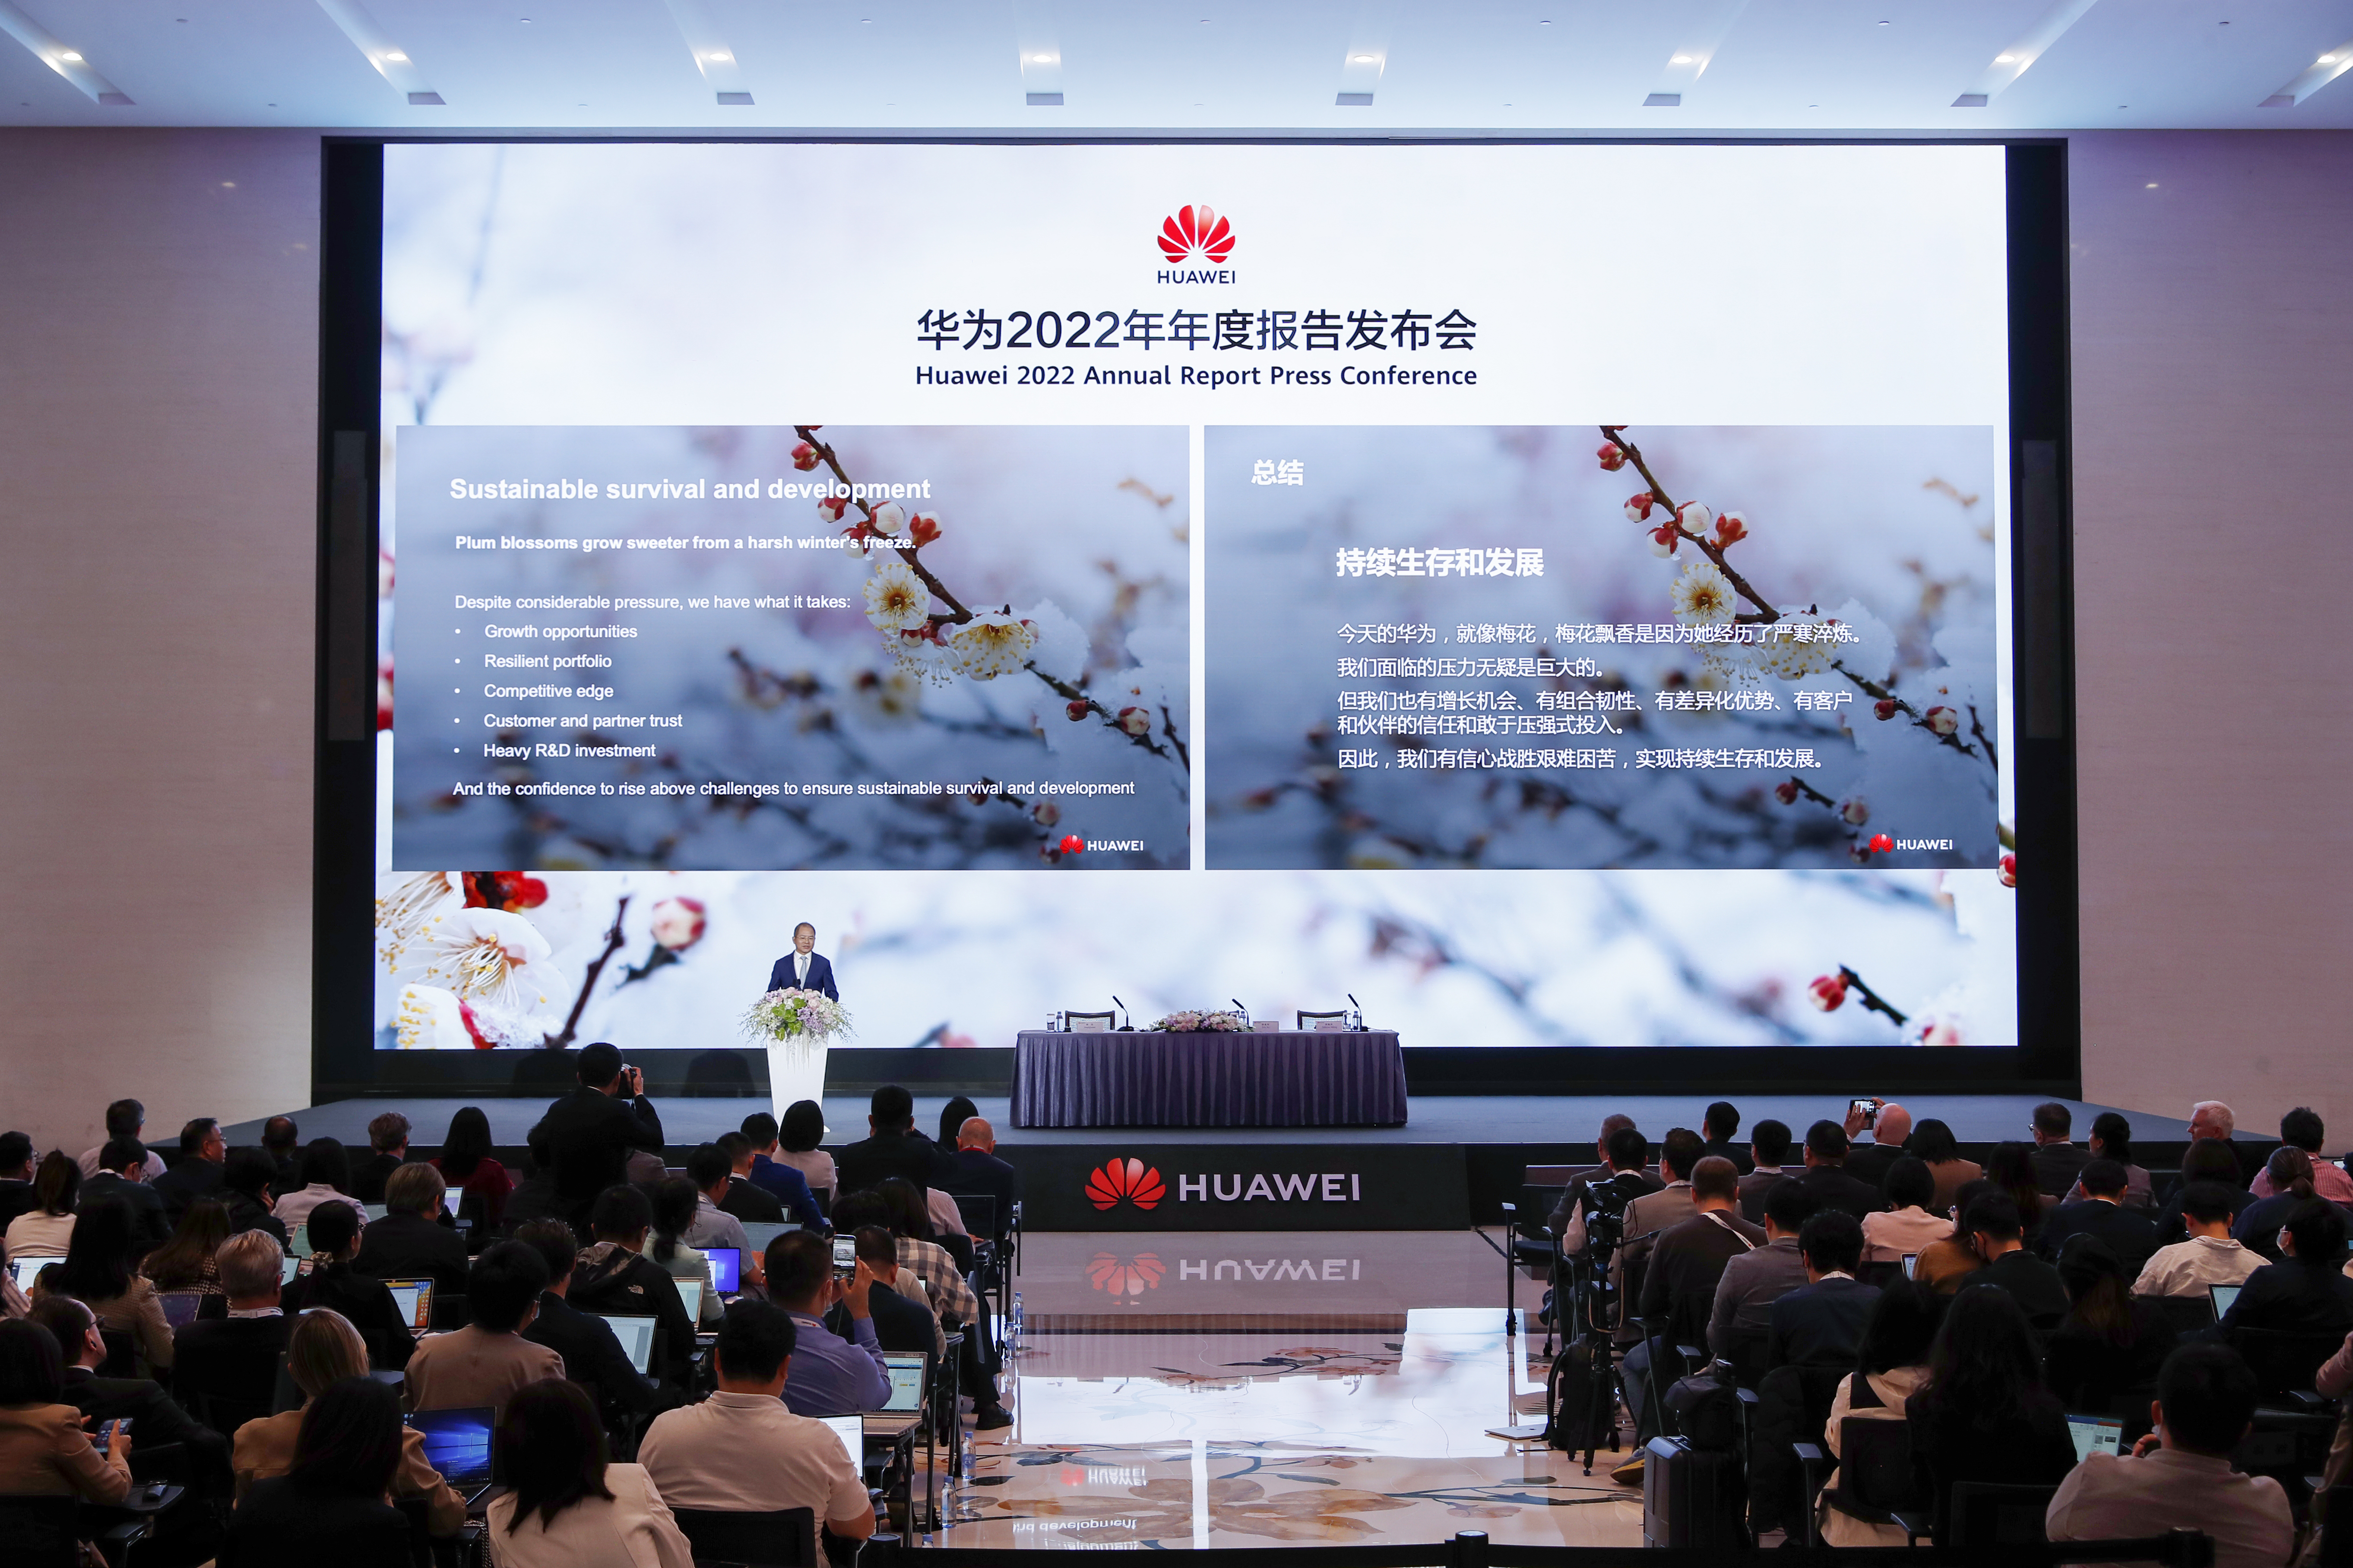 Huawei publica su informe anual de 2022: operaciones estables, supervivencia y desarrollo sostenibles